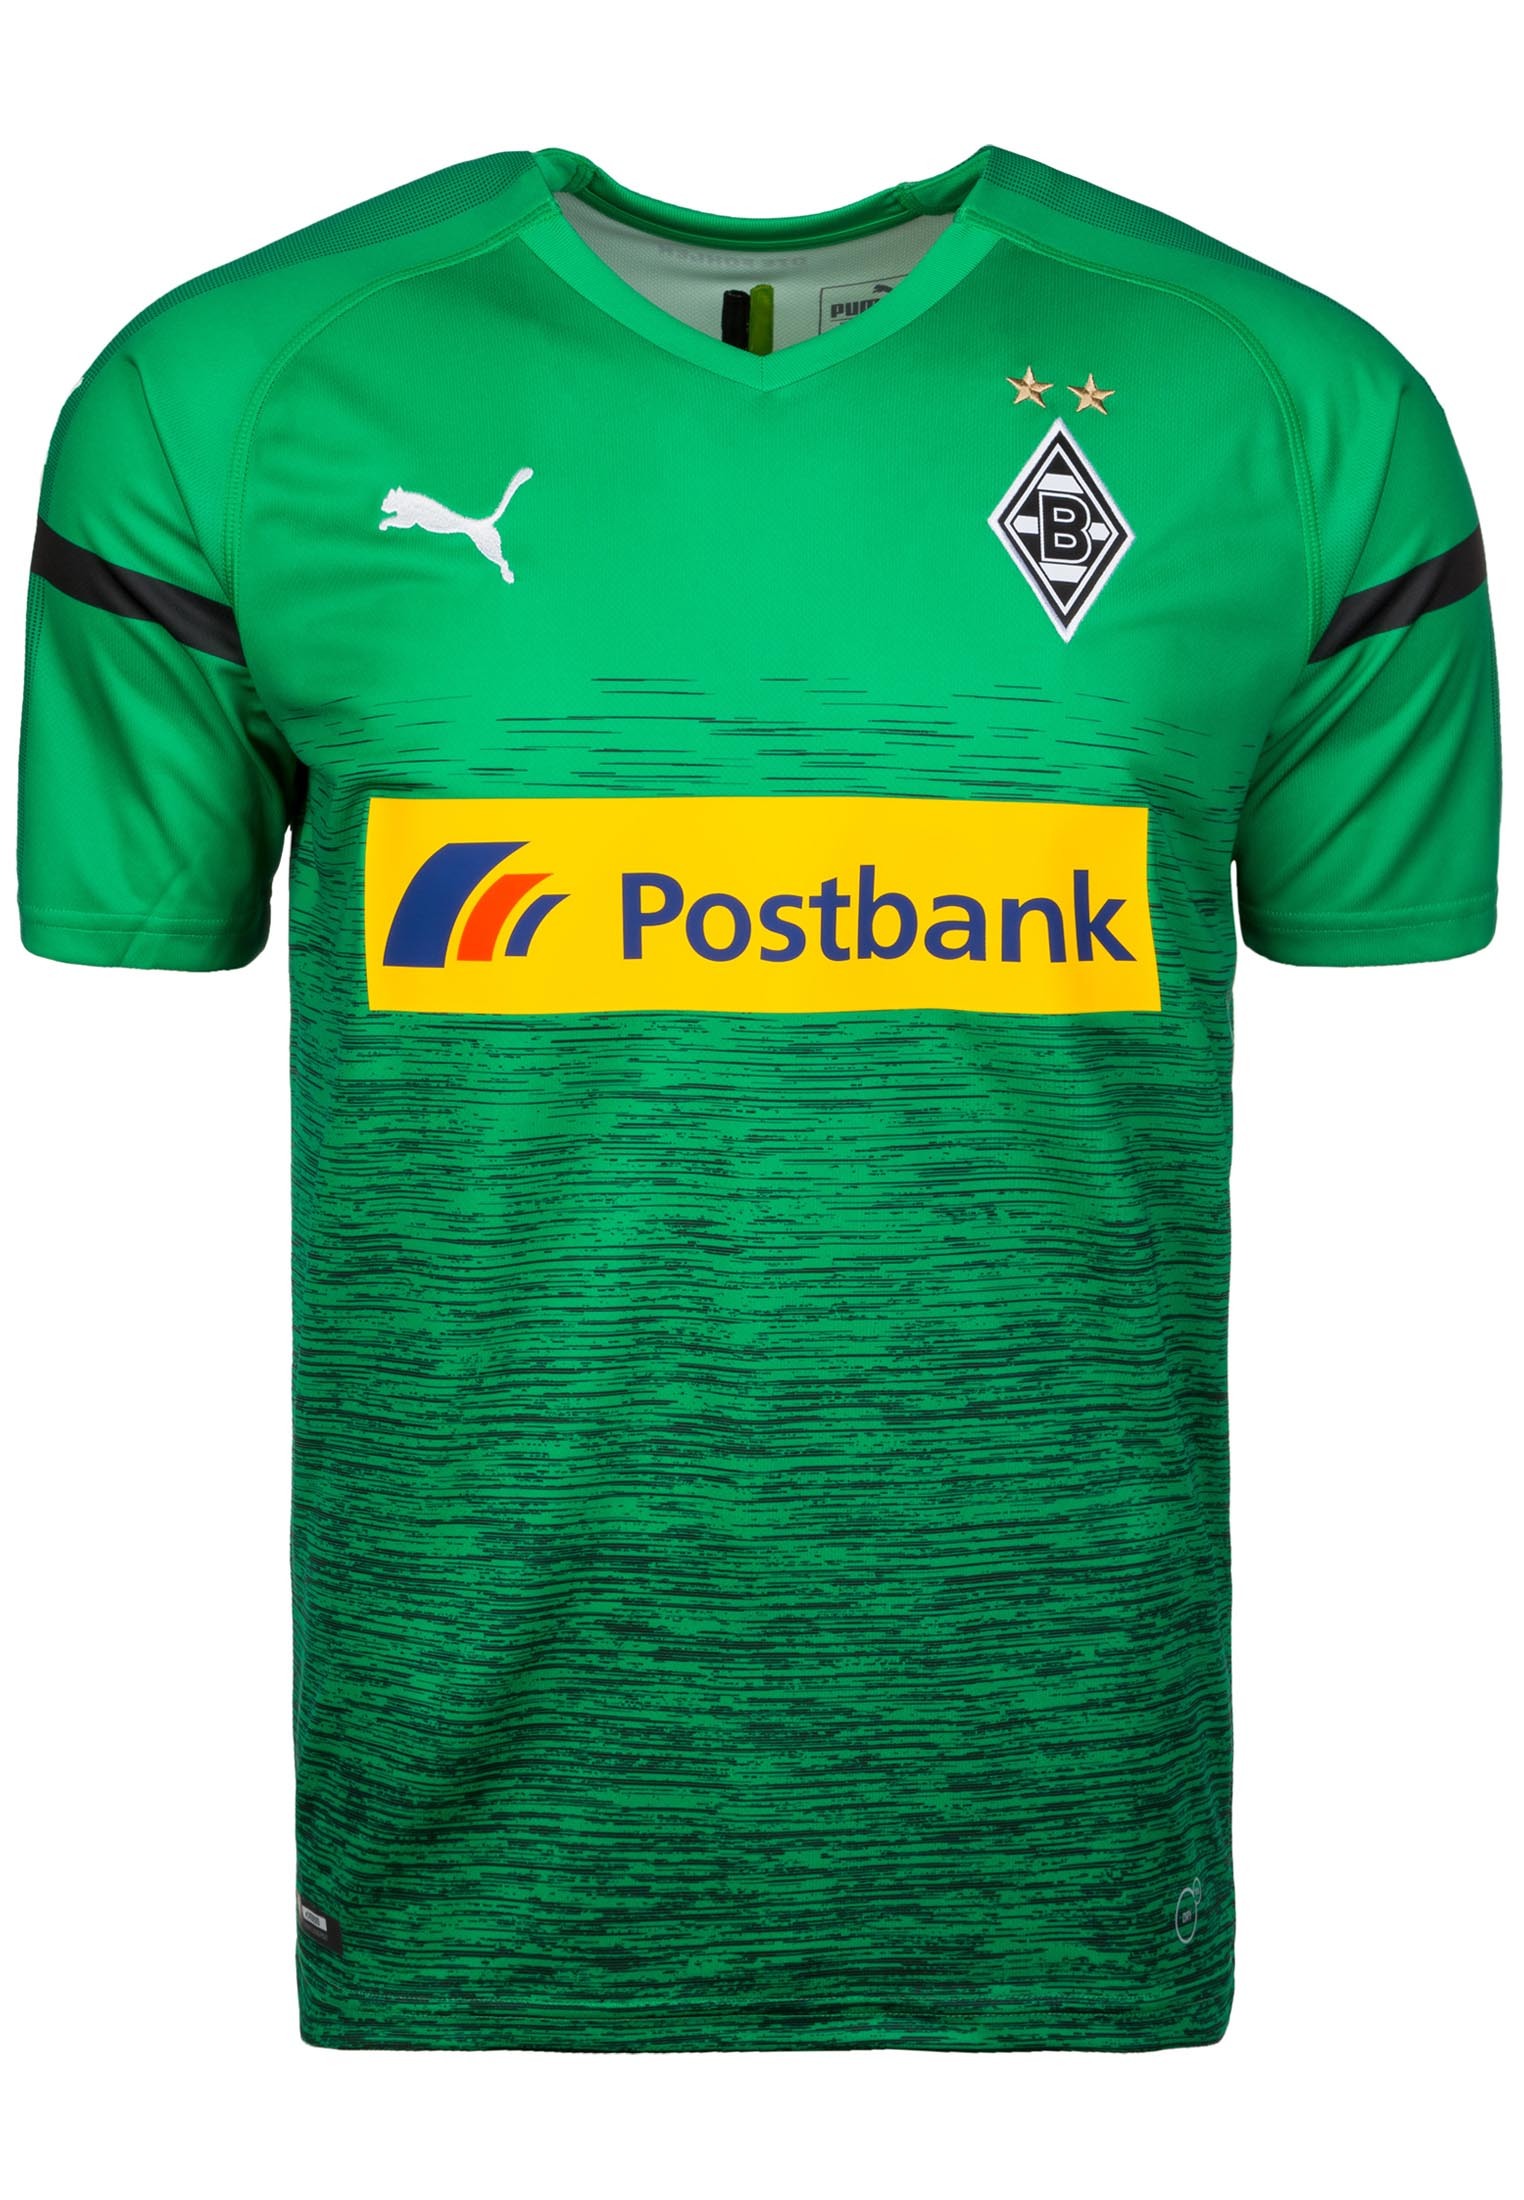 PUMA Trikot Borussia Mönchengladbach 3rd 2018/2019 in Grün 